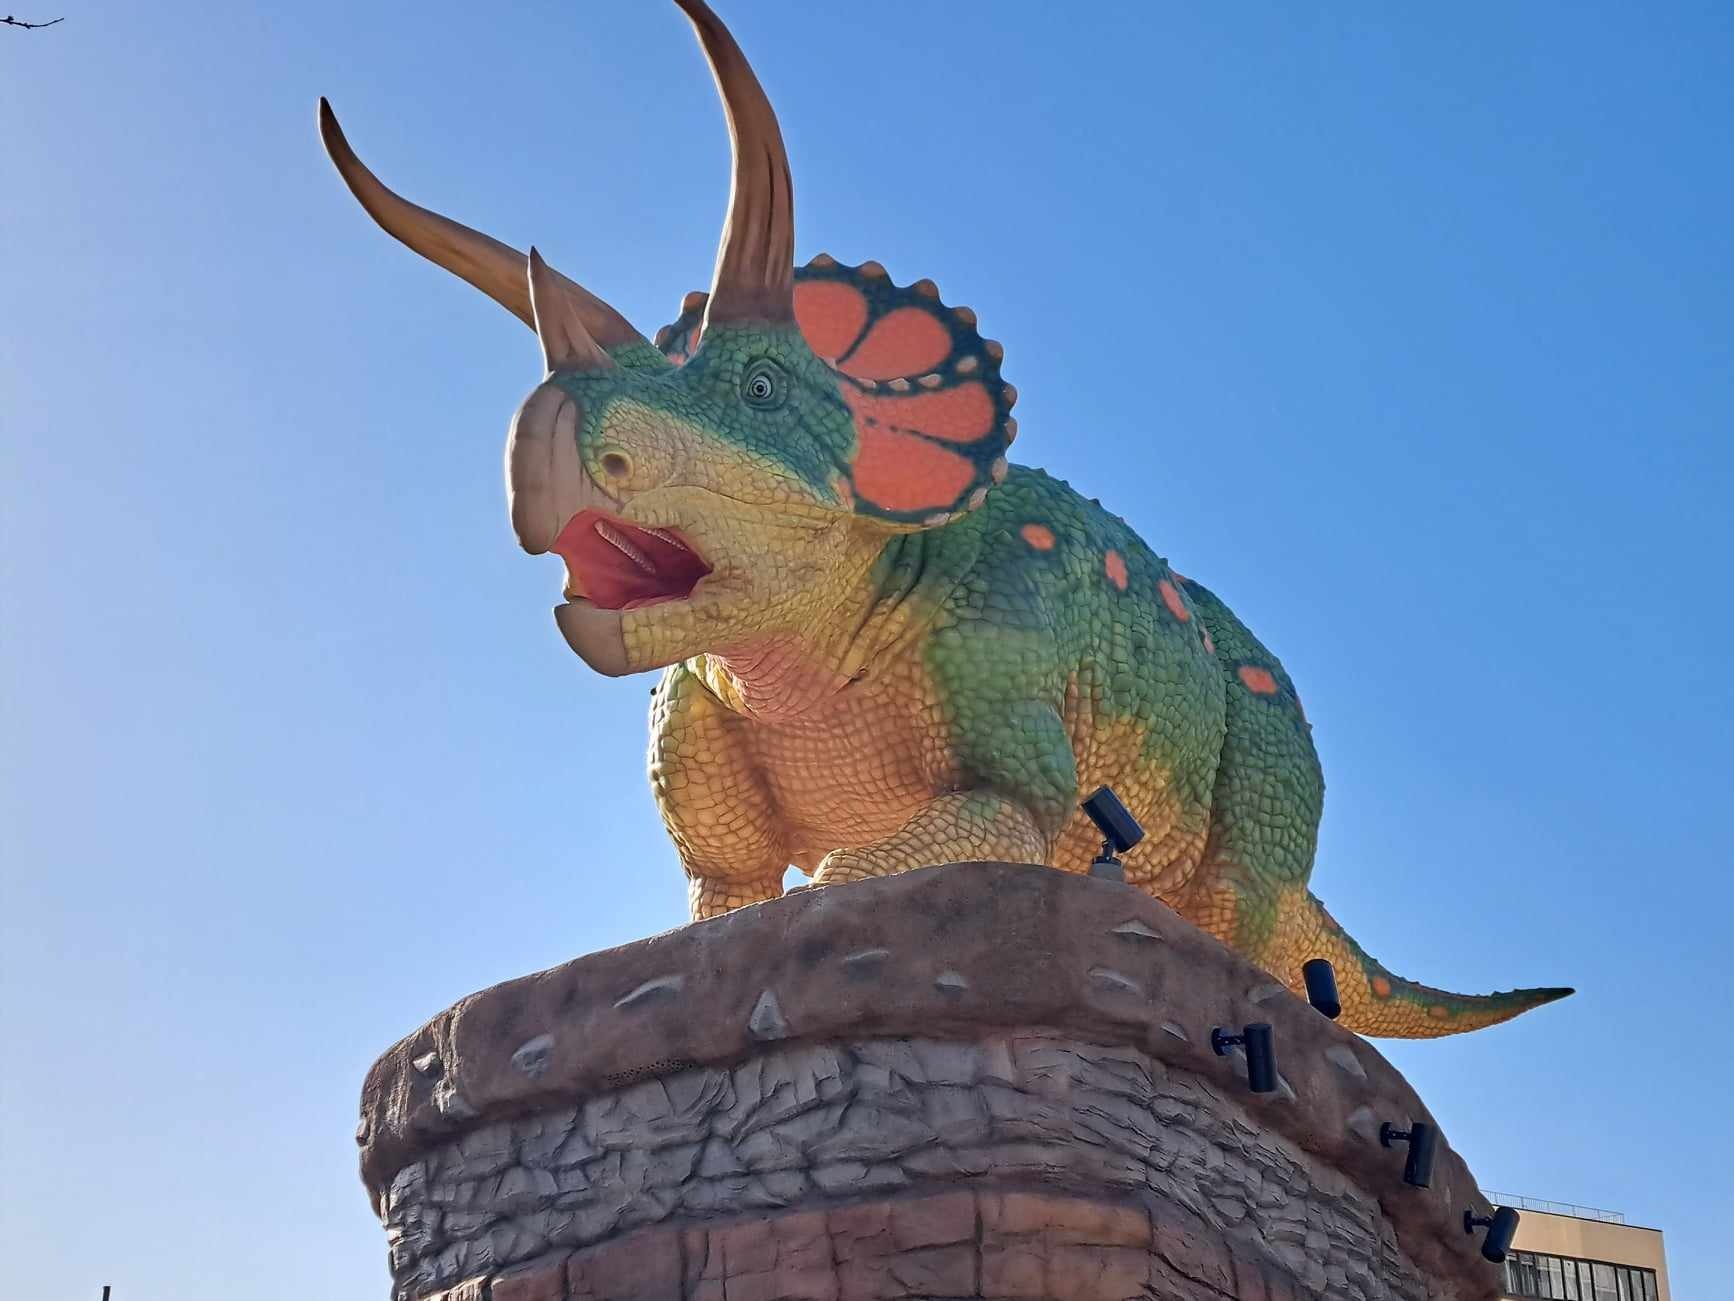 福井駅東口広場にはトリケラトプスの親子が。仰ぎ見る親恐竜は迫力があります